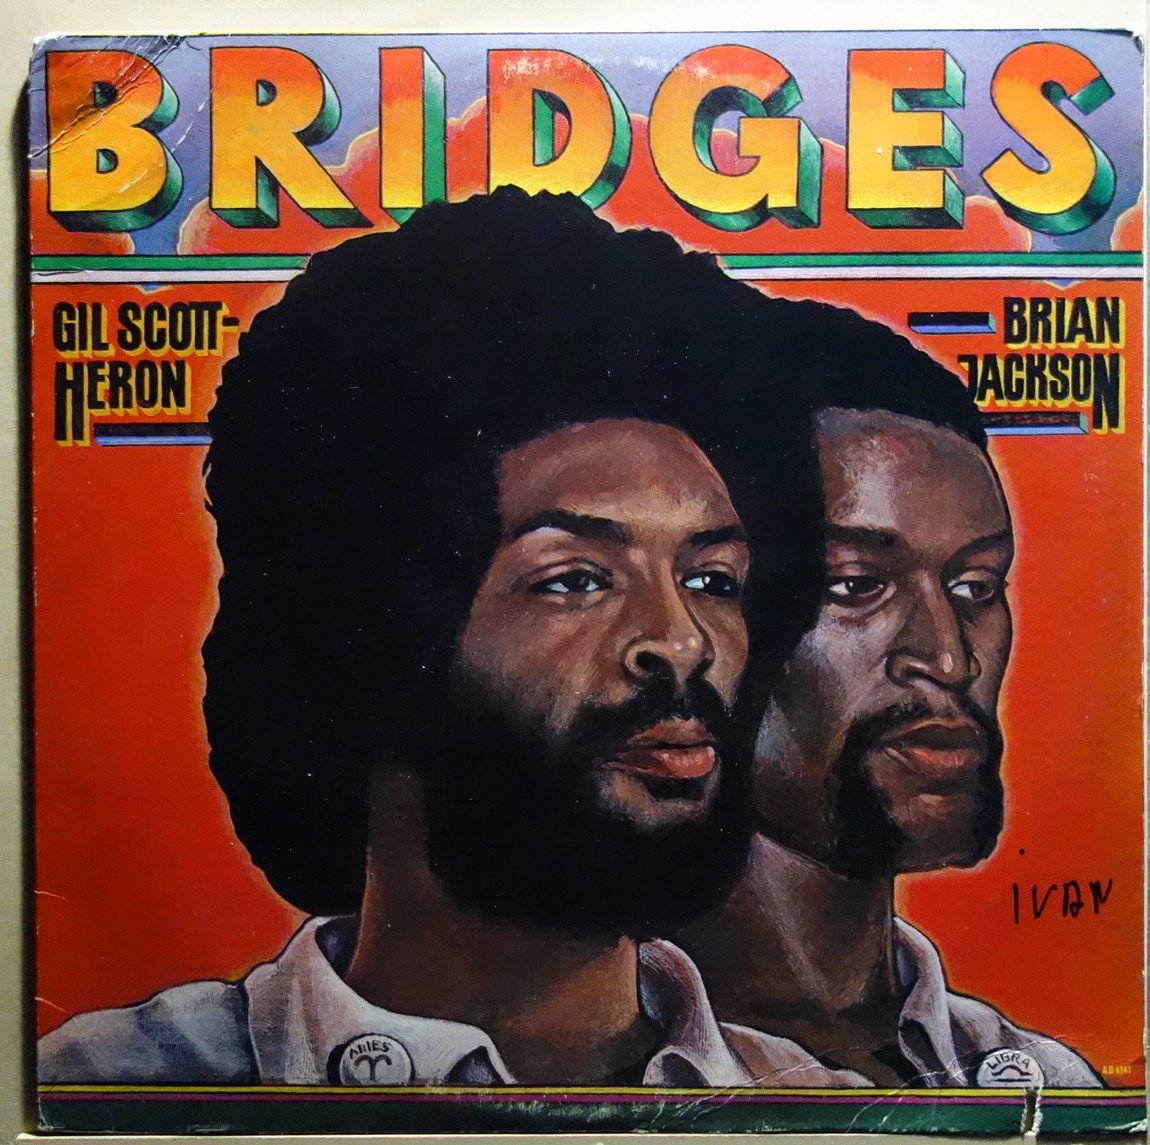 Gil Scott-Heron & Brian Jackson - Bridges - Vinylian - Vintage Vinyl Record